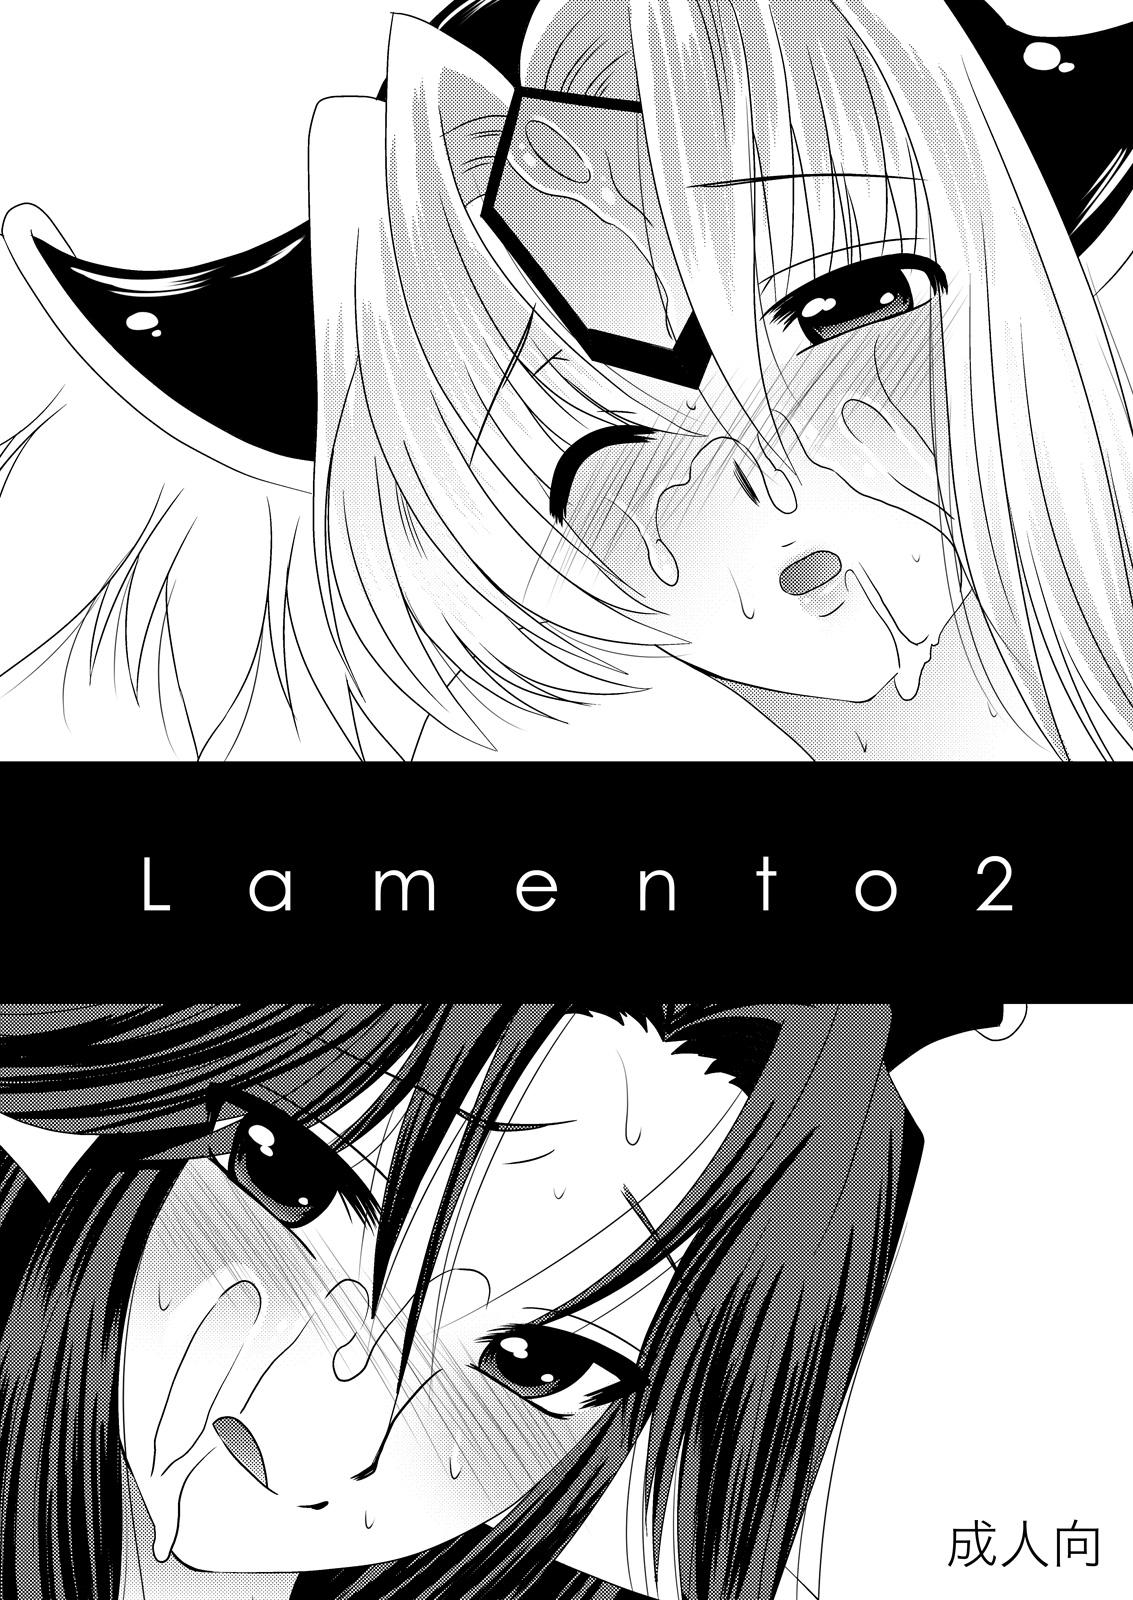 Chica Lamento + Omake - Seiken densetsu 3 Latin - Page 13